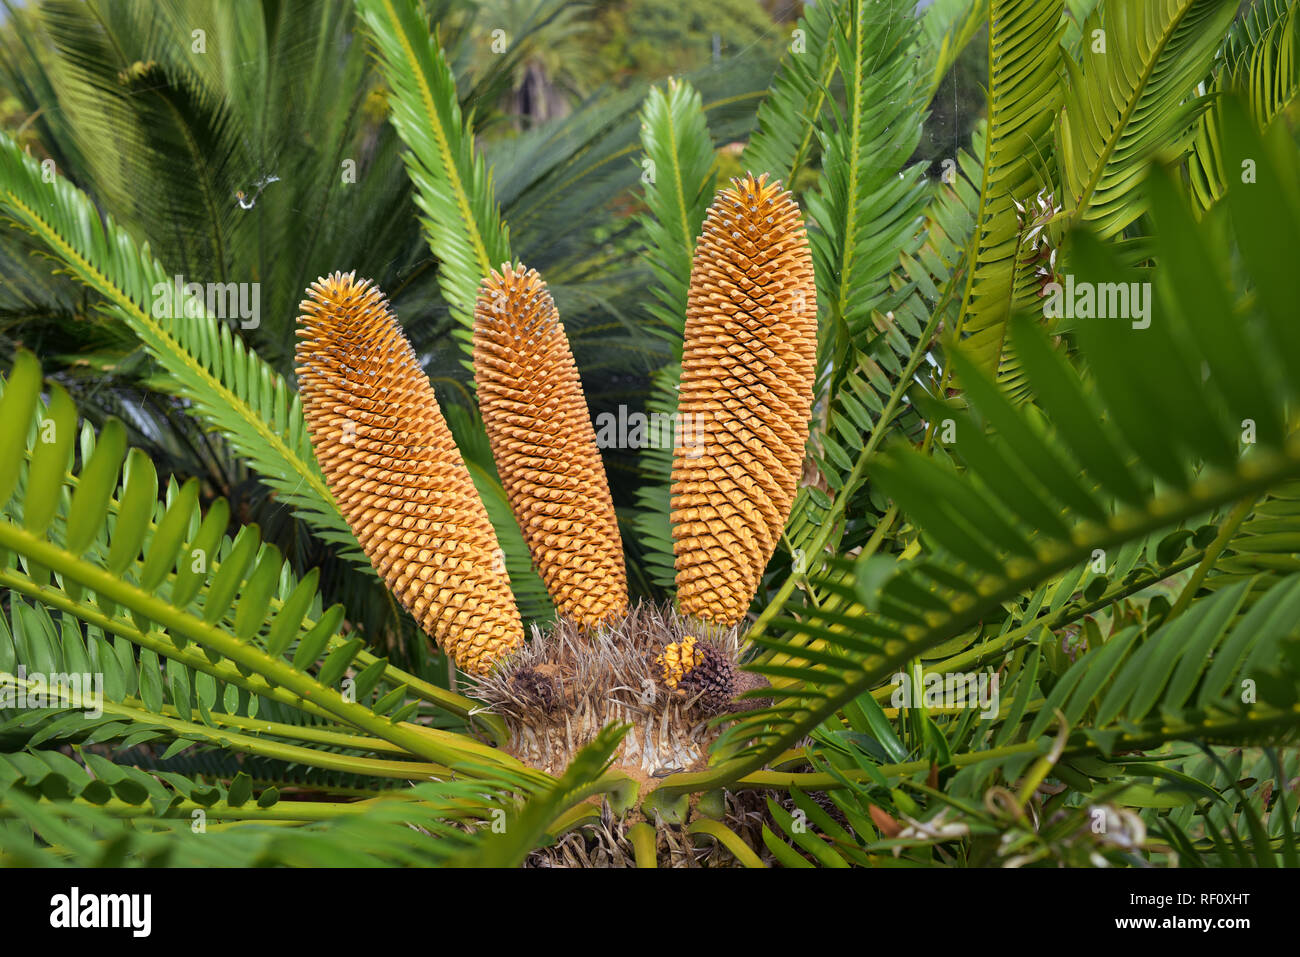 Encephalartos cycad from south africa Stock Photo